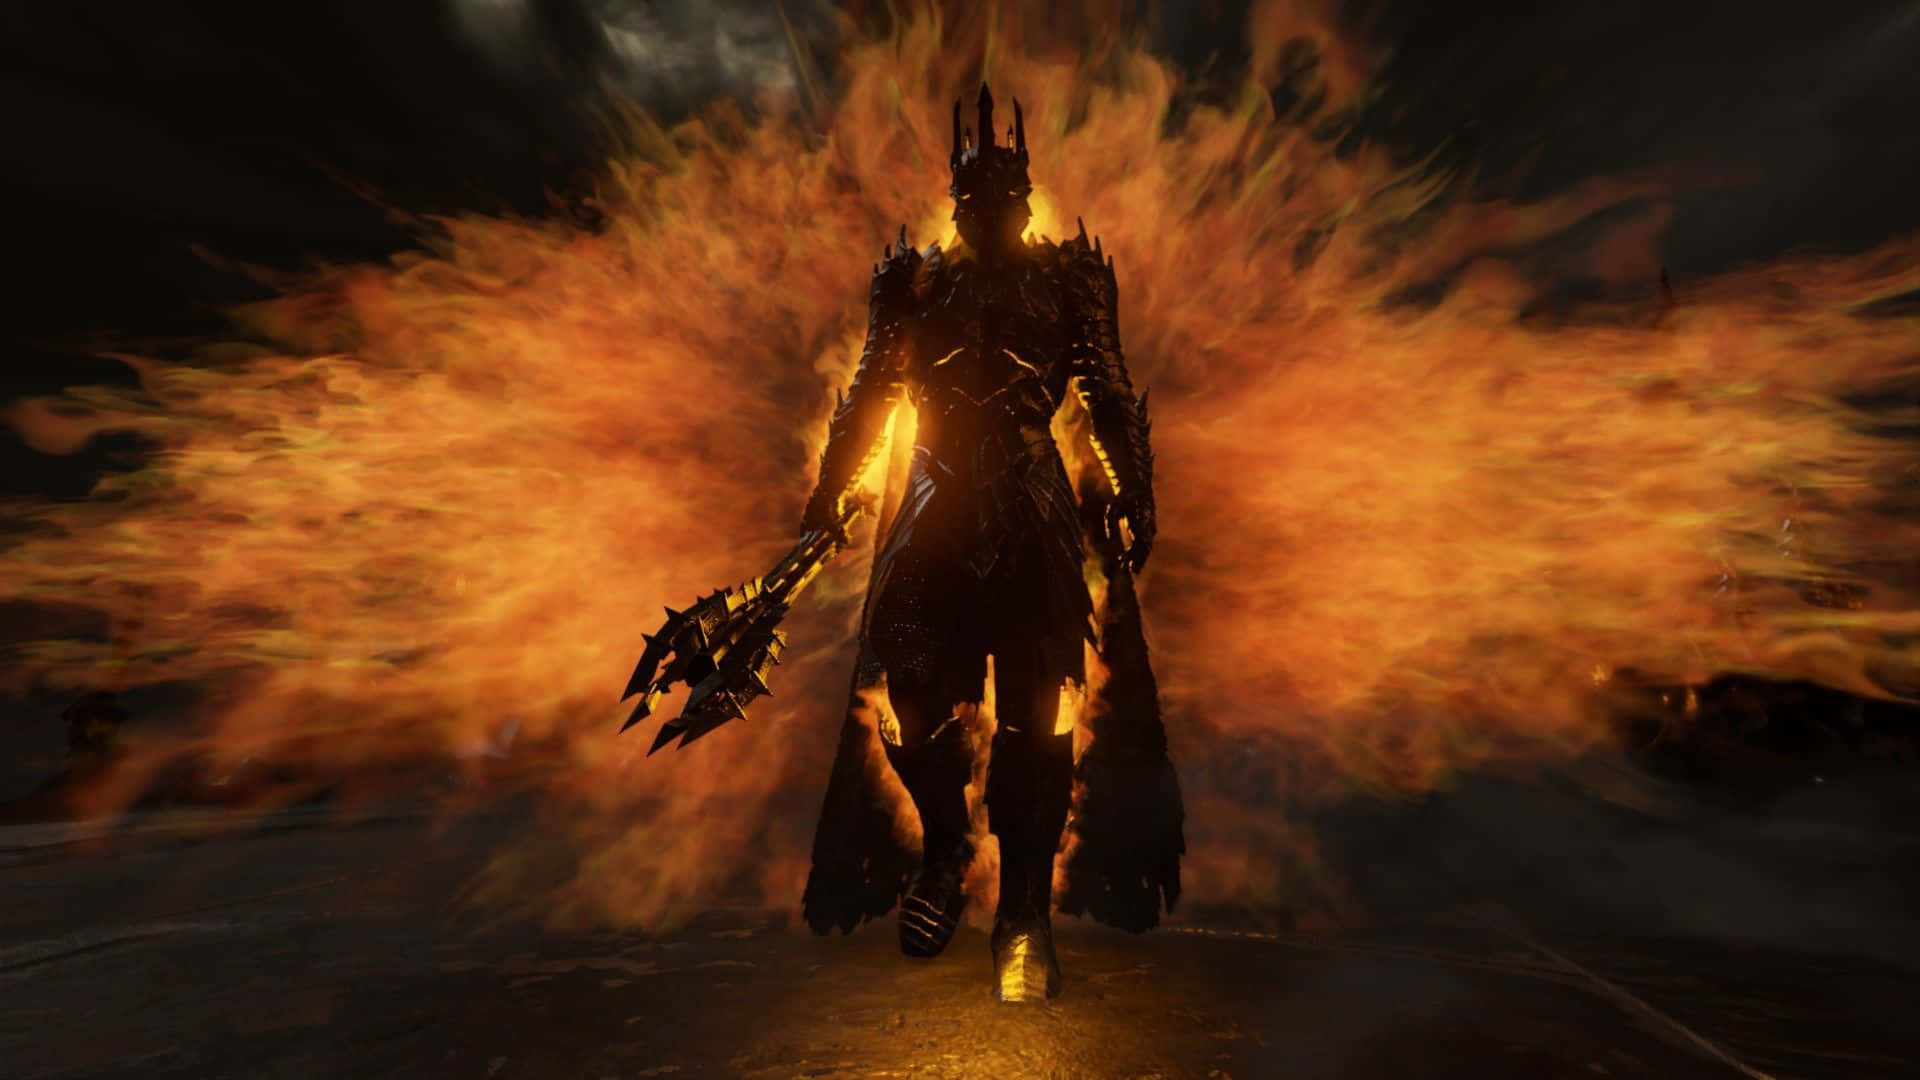 A Dark Knight In A Fire Costume